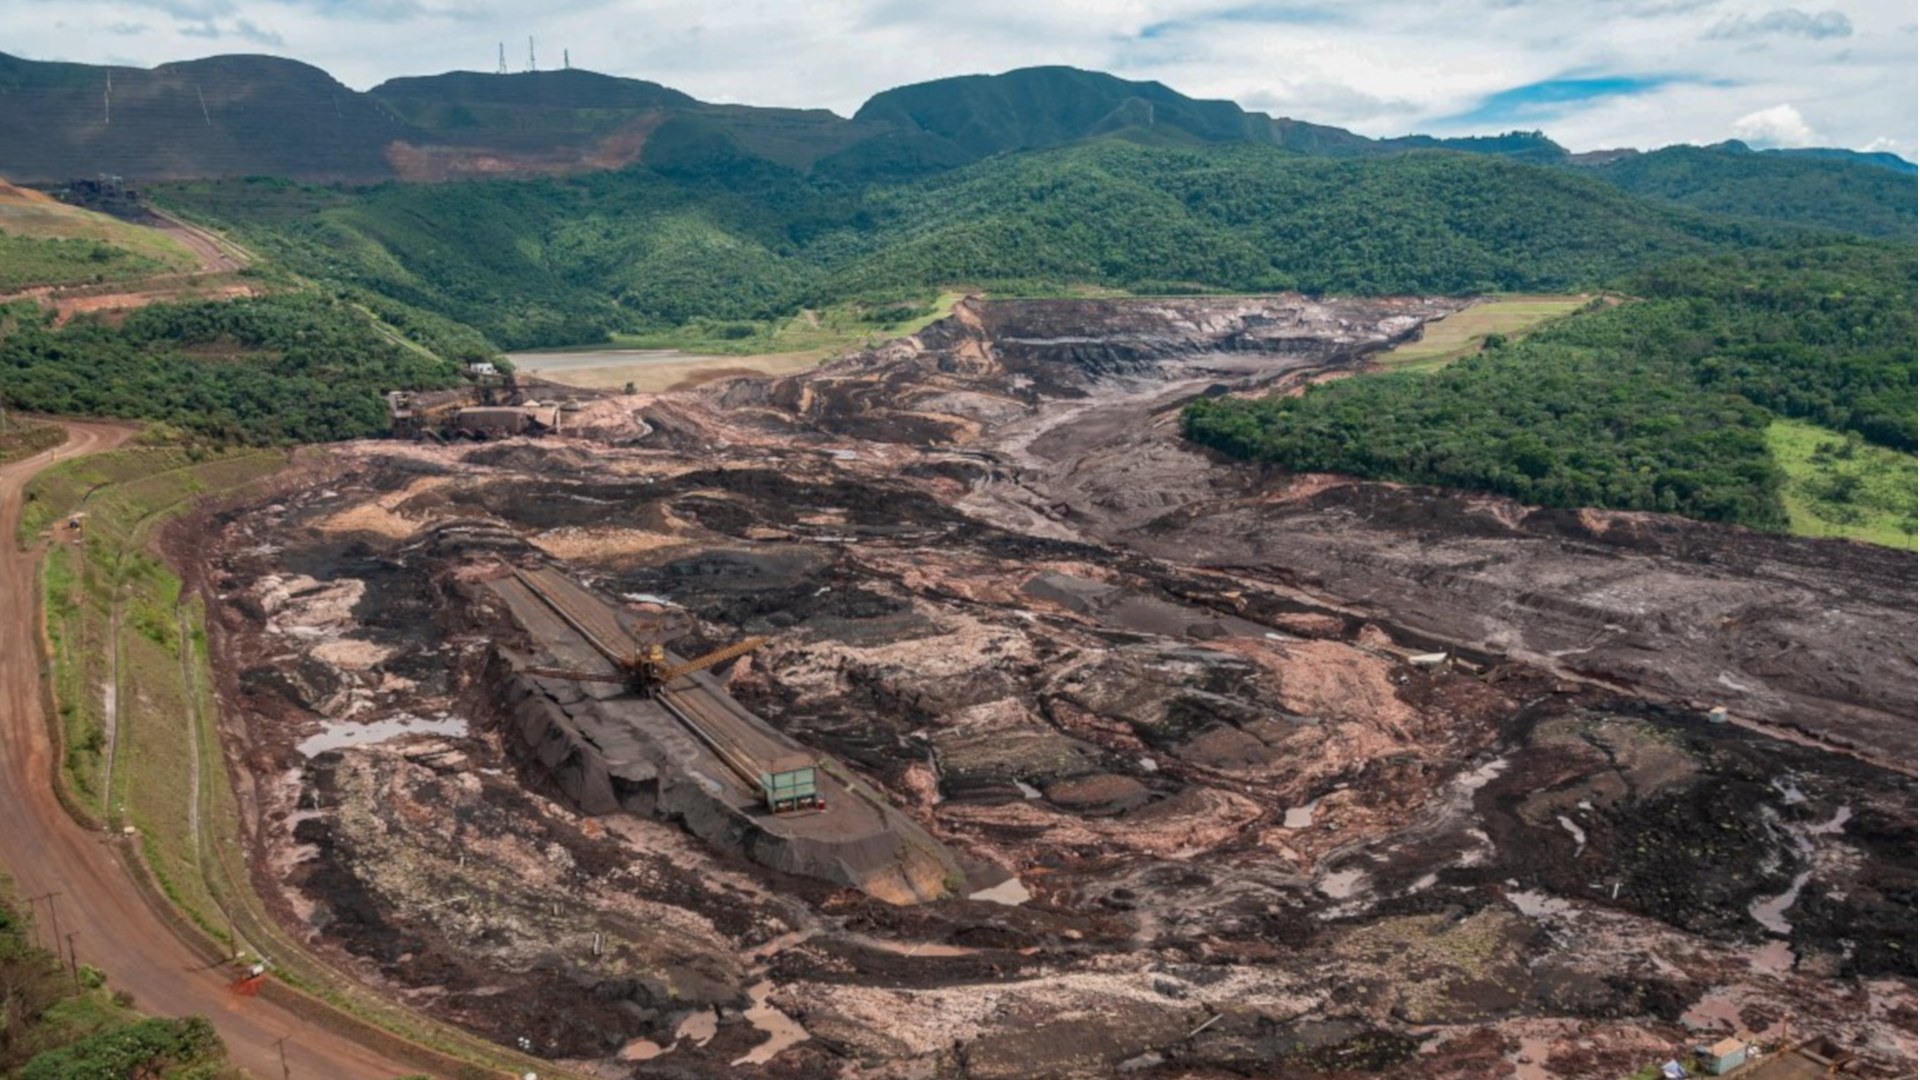 Destruição causada em Brumadinho (MG) pelo rompimento de uma barragem de rejeitos da Vale, em janeiro de 2019 (foto: Vinícius Mendonça / Ibama)